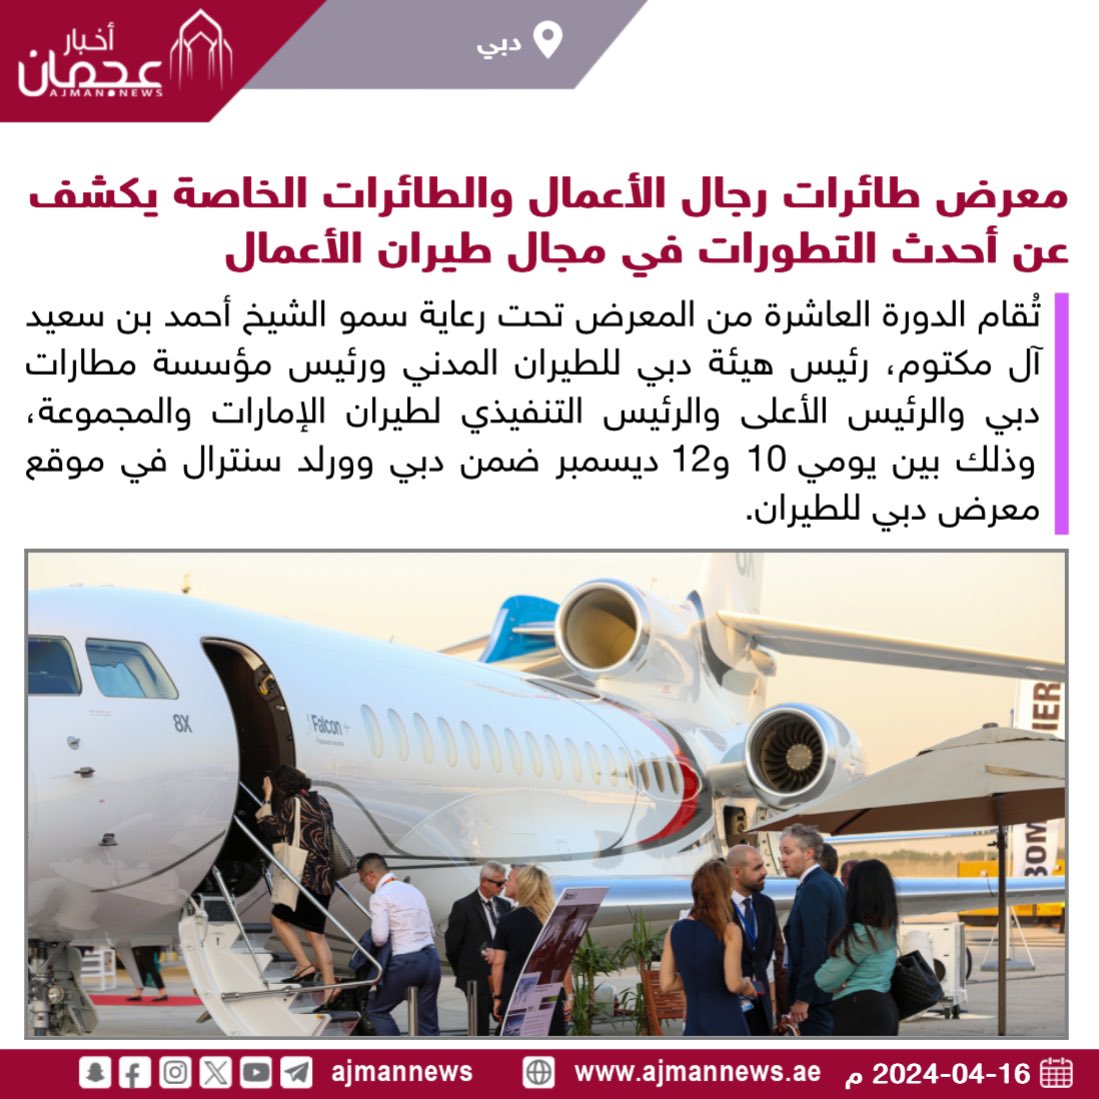 معرض طائرات رجال الأعمال والطائرات الخاصة يكشف عن أحدث التطورات في مجال طيران الأعمال ajmannews.ae/120932 #أخبار_الفعاليات  #فعاليات  #فعاليات_الإمارات  #الإمارات  #معرض  #أخبار #دبي  #أخبار_دبي